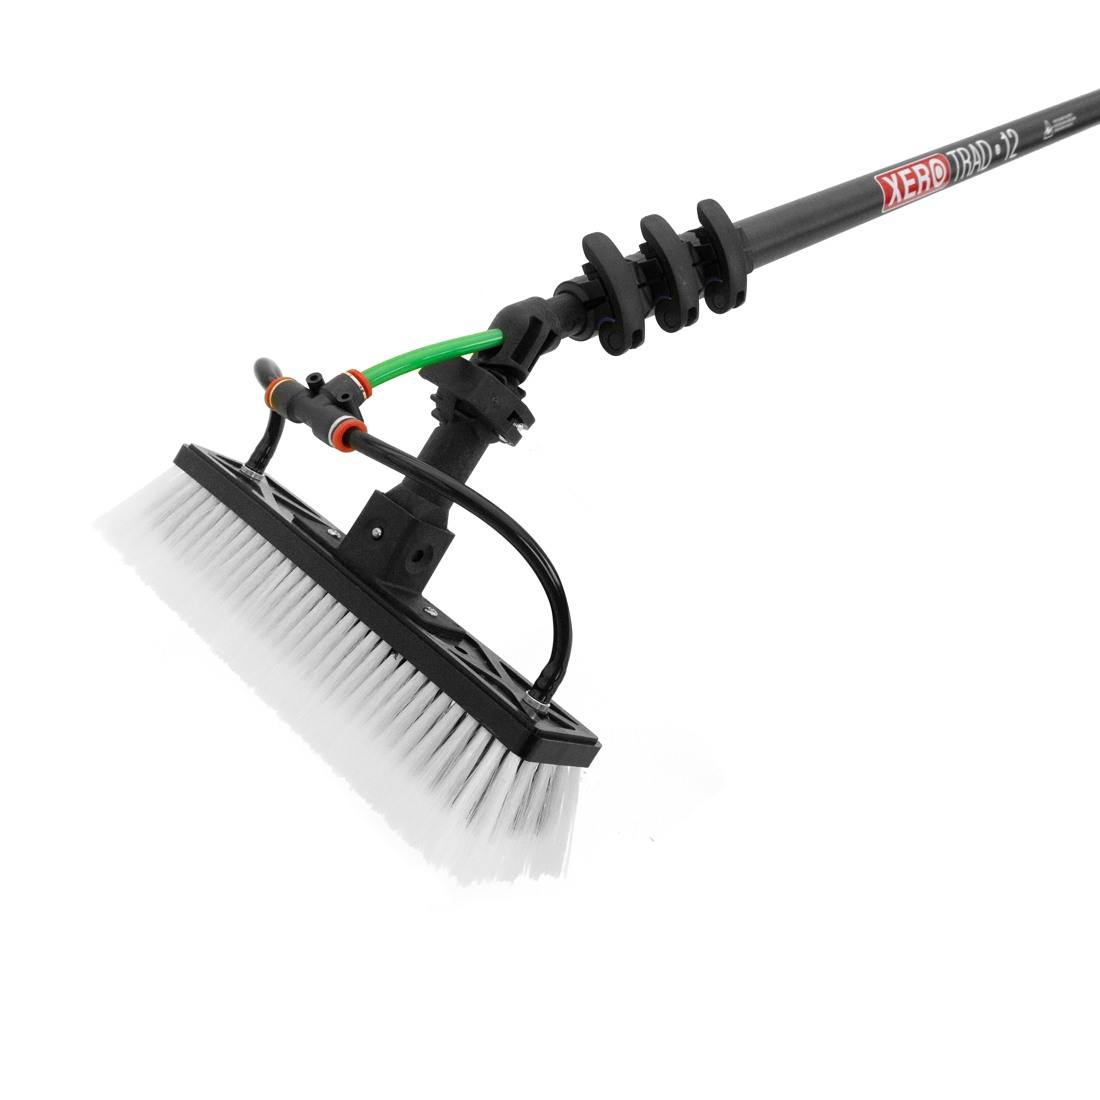 XERO Hybrid Brush | Waterfed Brush | WCR